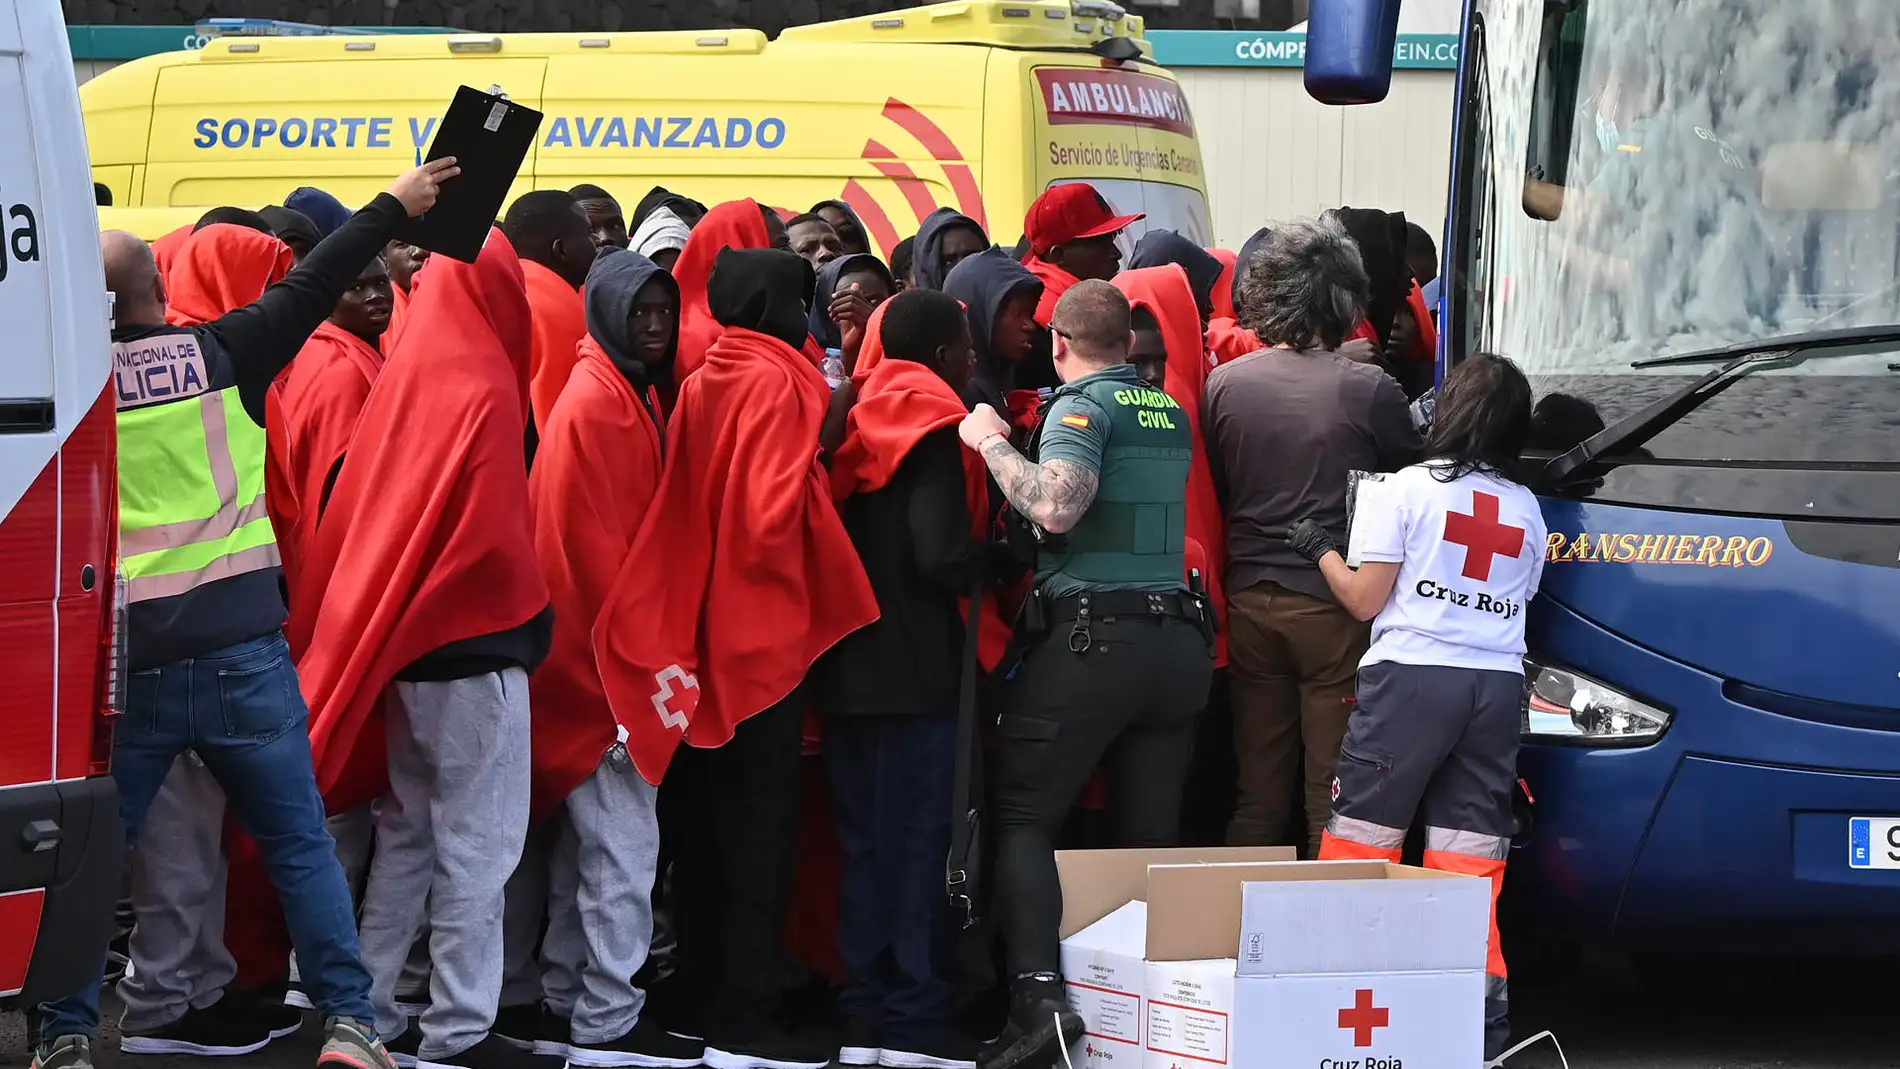  Migrantes rescatados este domingo a bordo de dos embarcaciones, con 90 y 52 personas, y trasladados hasta La Restinga